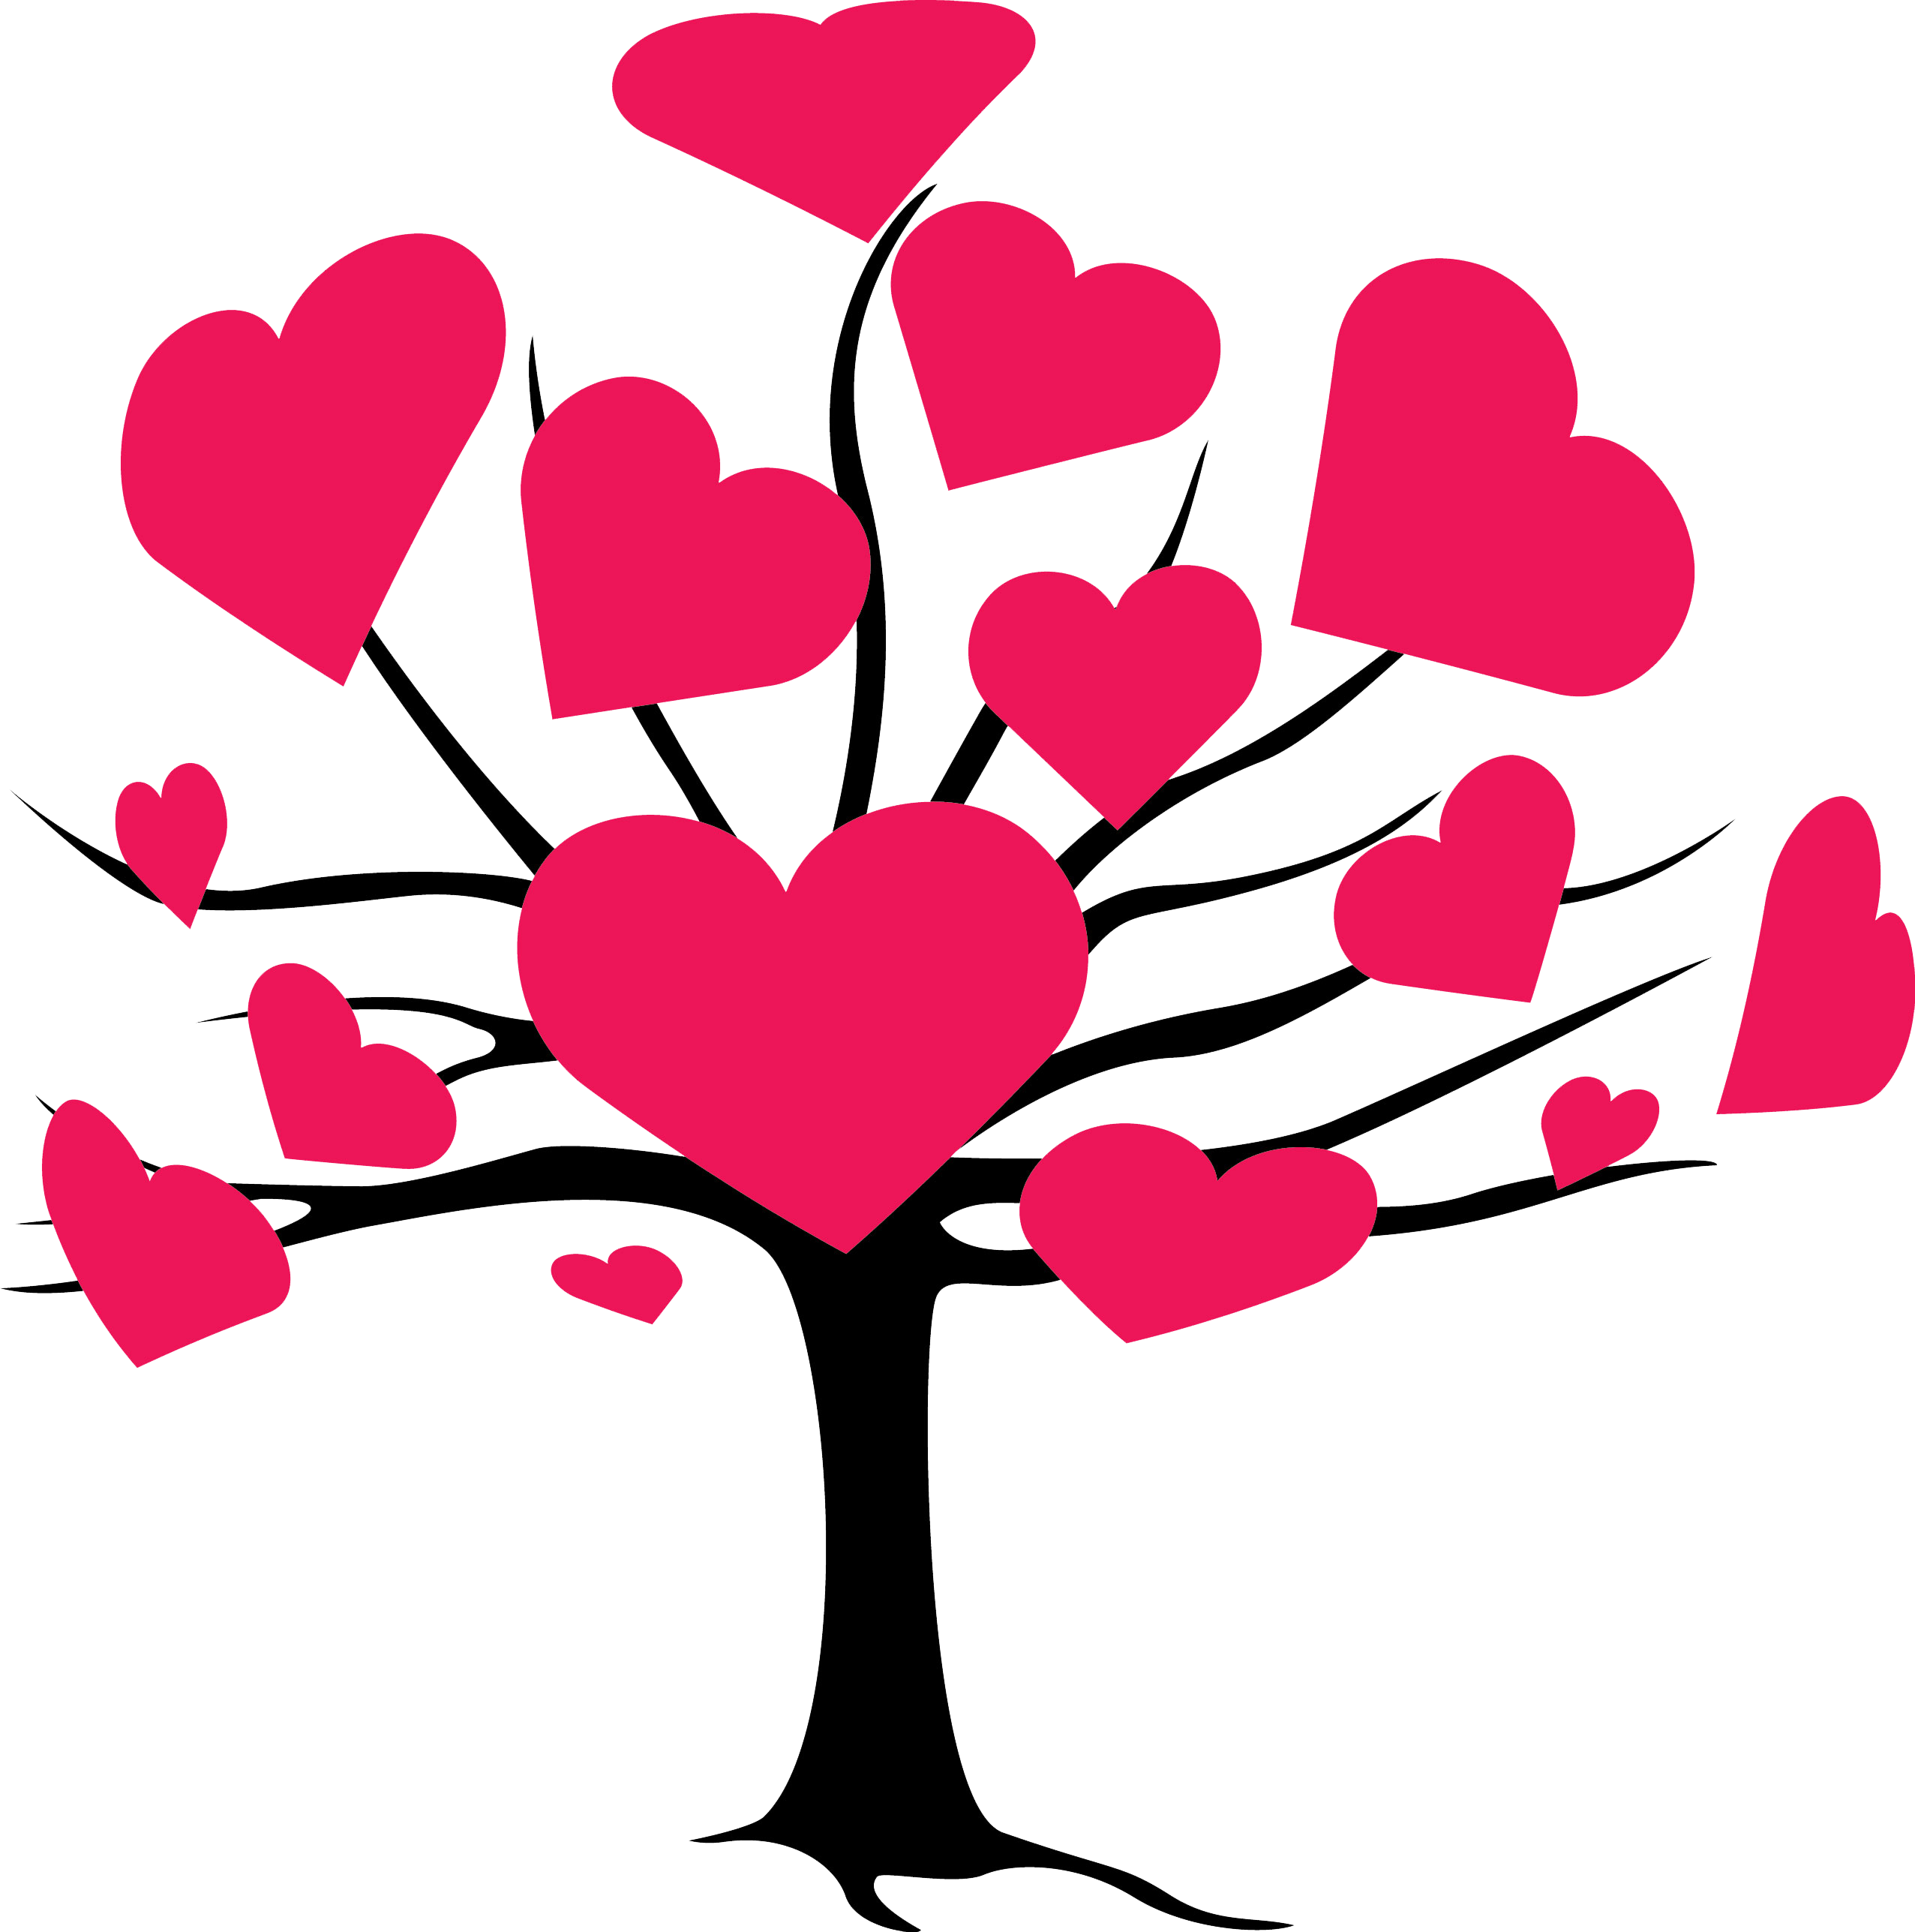 Imagen de PNG del árbol del corazón rojo